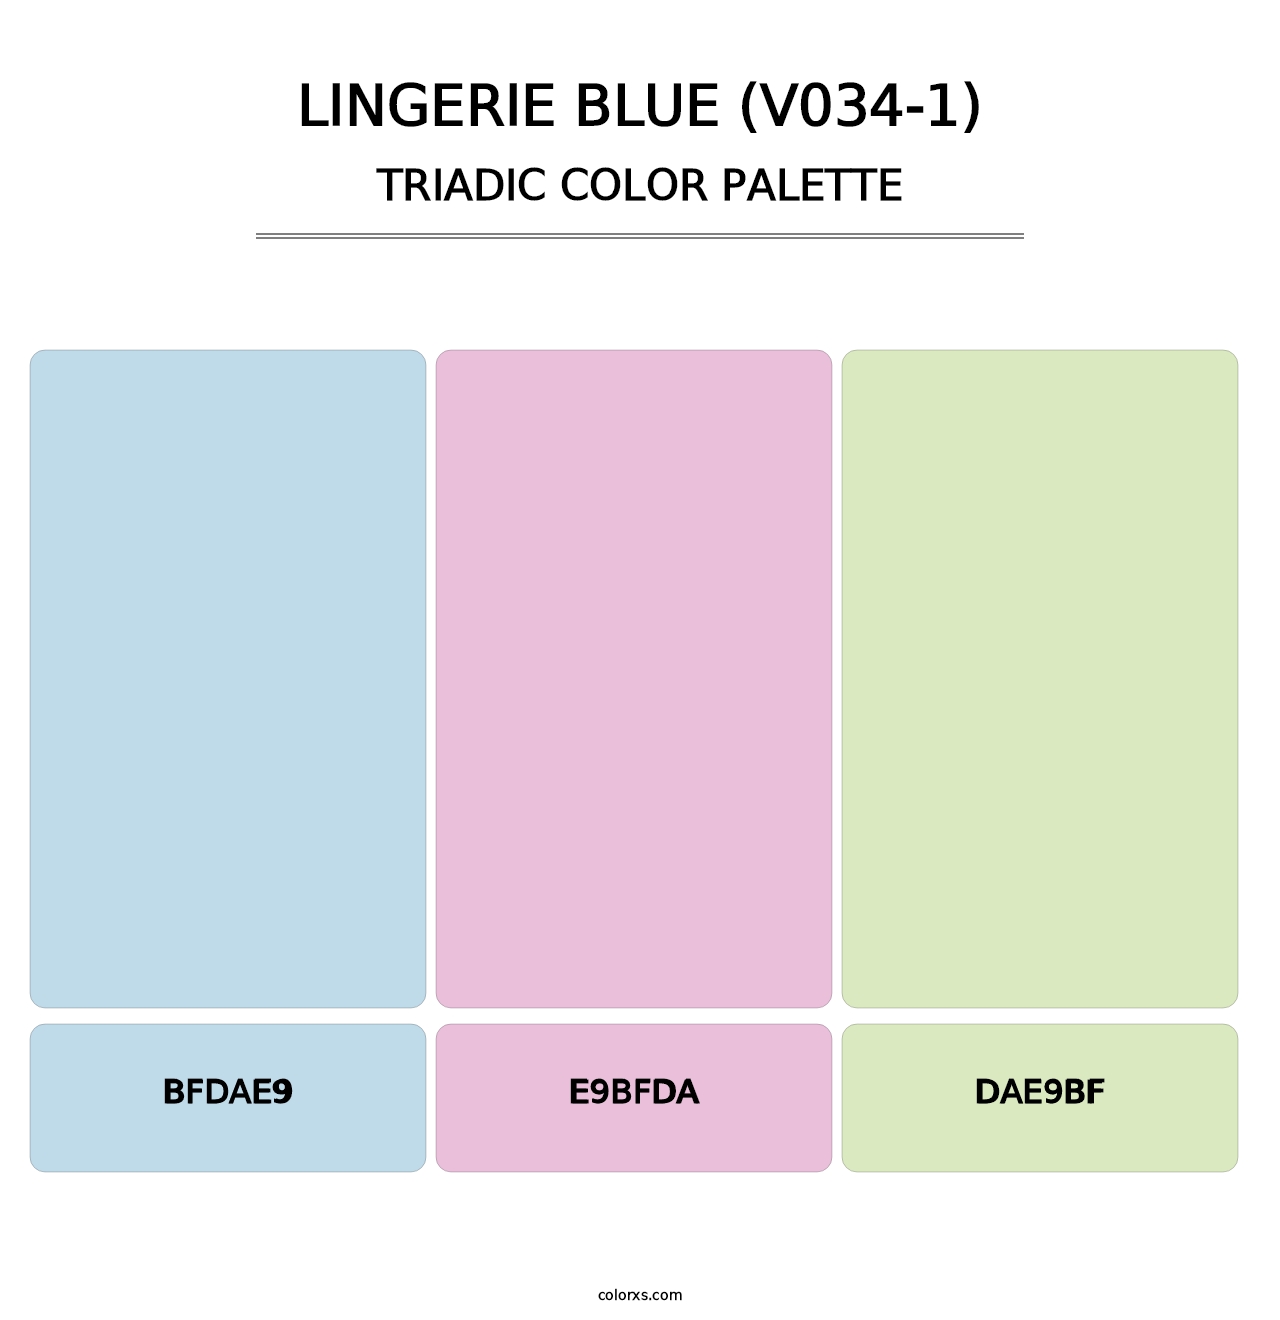 Lingerie Blue (V034-1) - Triadic Color Palette